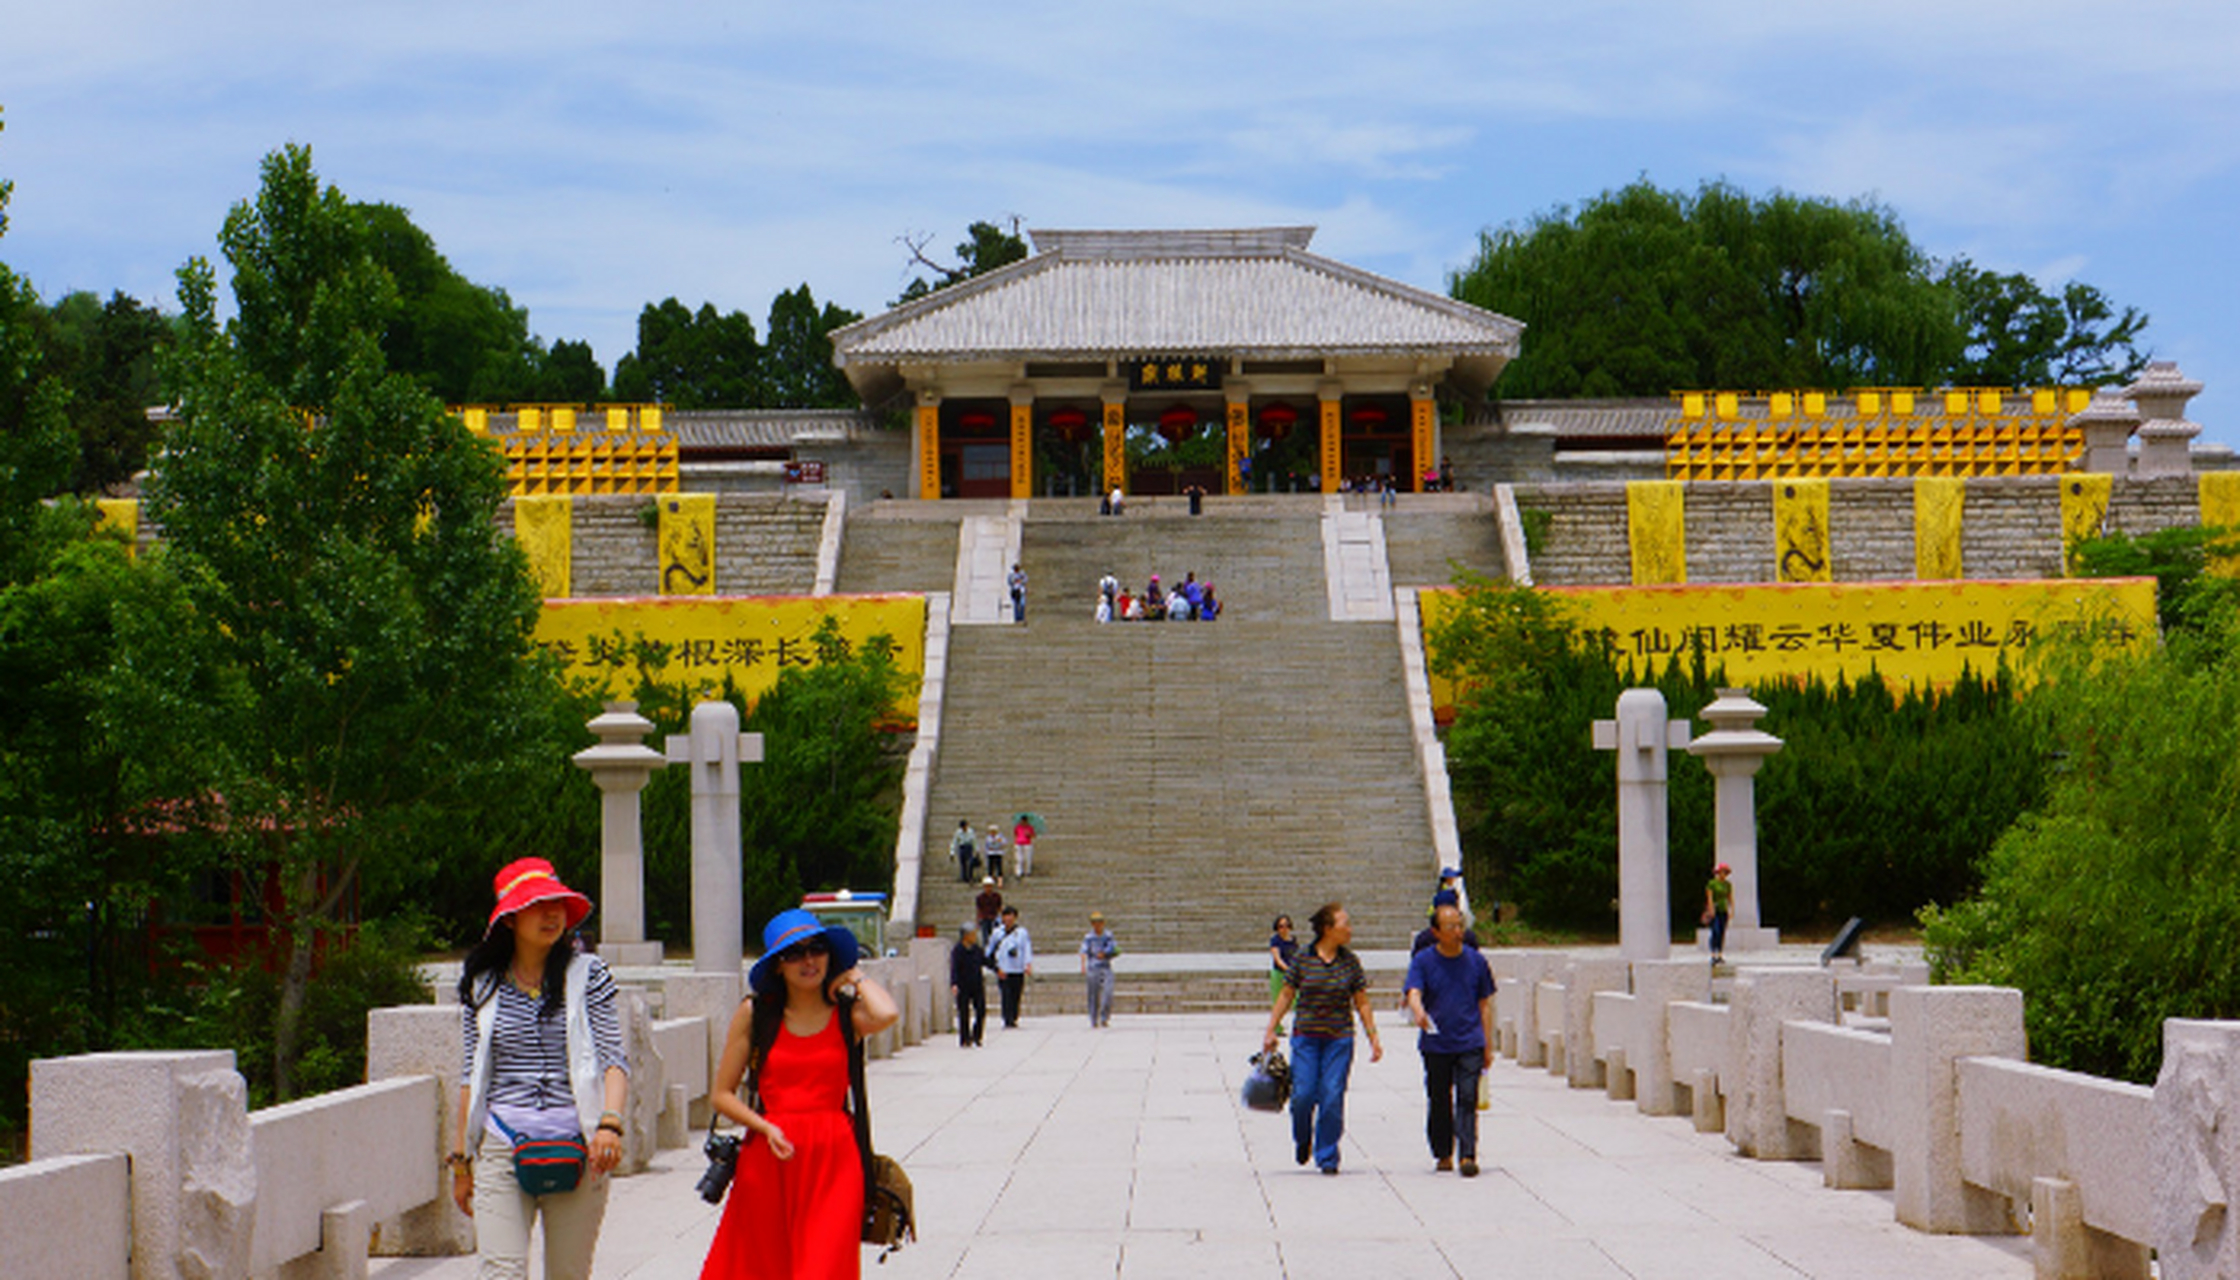 黄帝陵:是中华民族始祖轩辕黄帝的陵寝,位于陕西省黄陵县城北1公里处